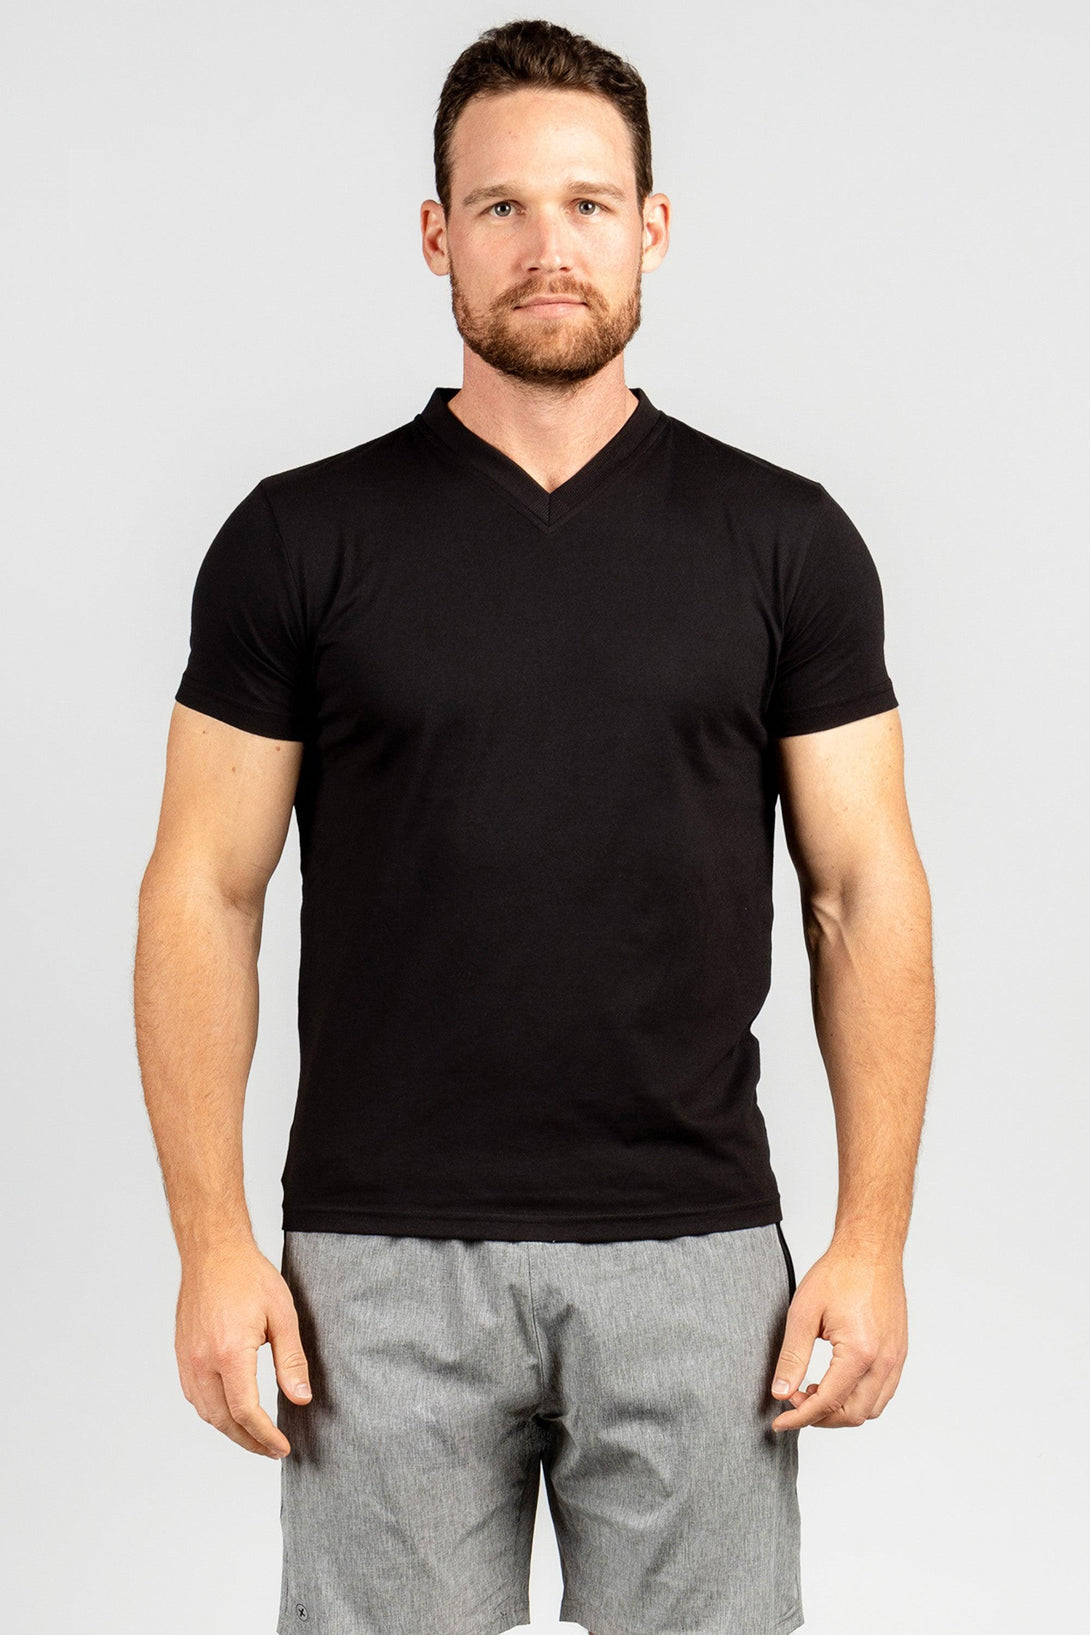 V-Neck T-Shirts | WHITE - BLACK - Pack of 6 - FTS